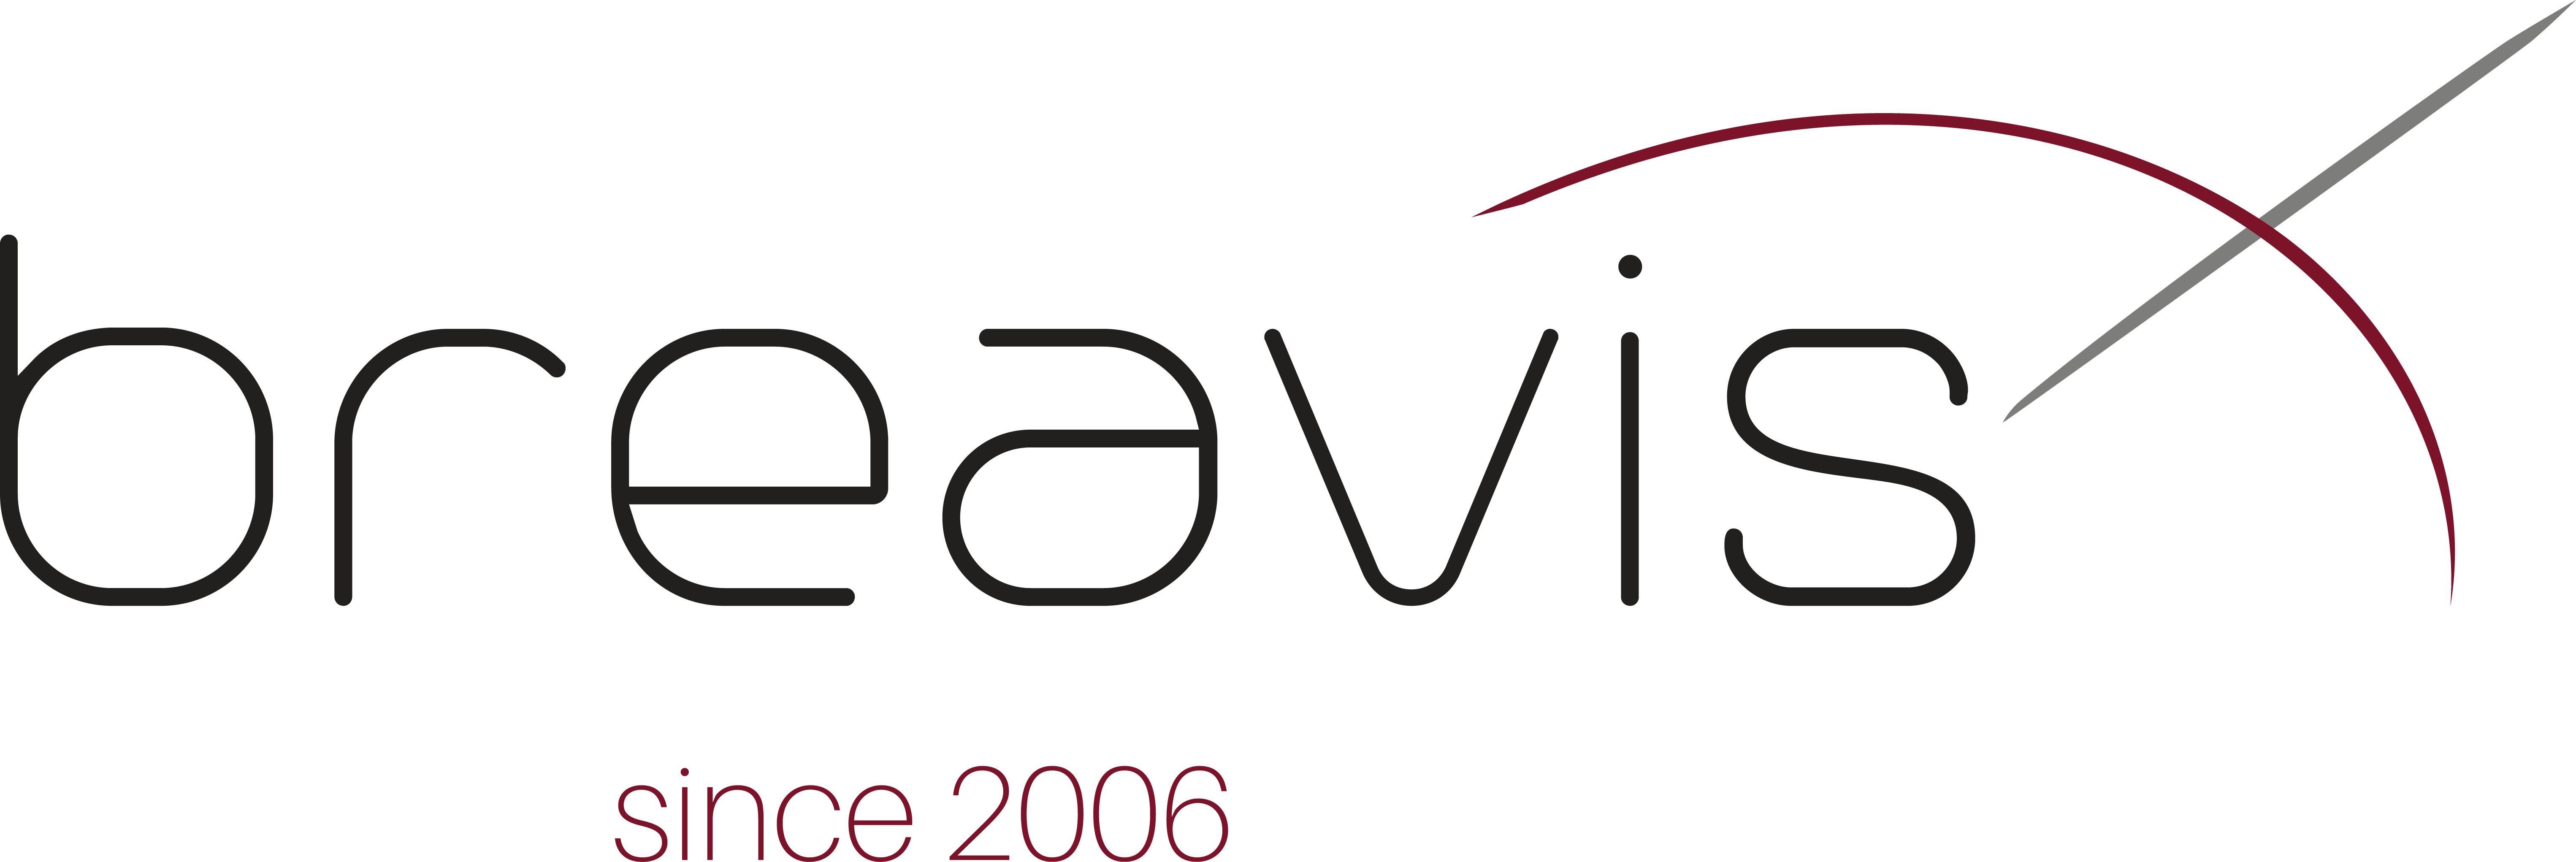 Breavis since 2006_Logo